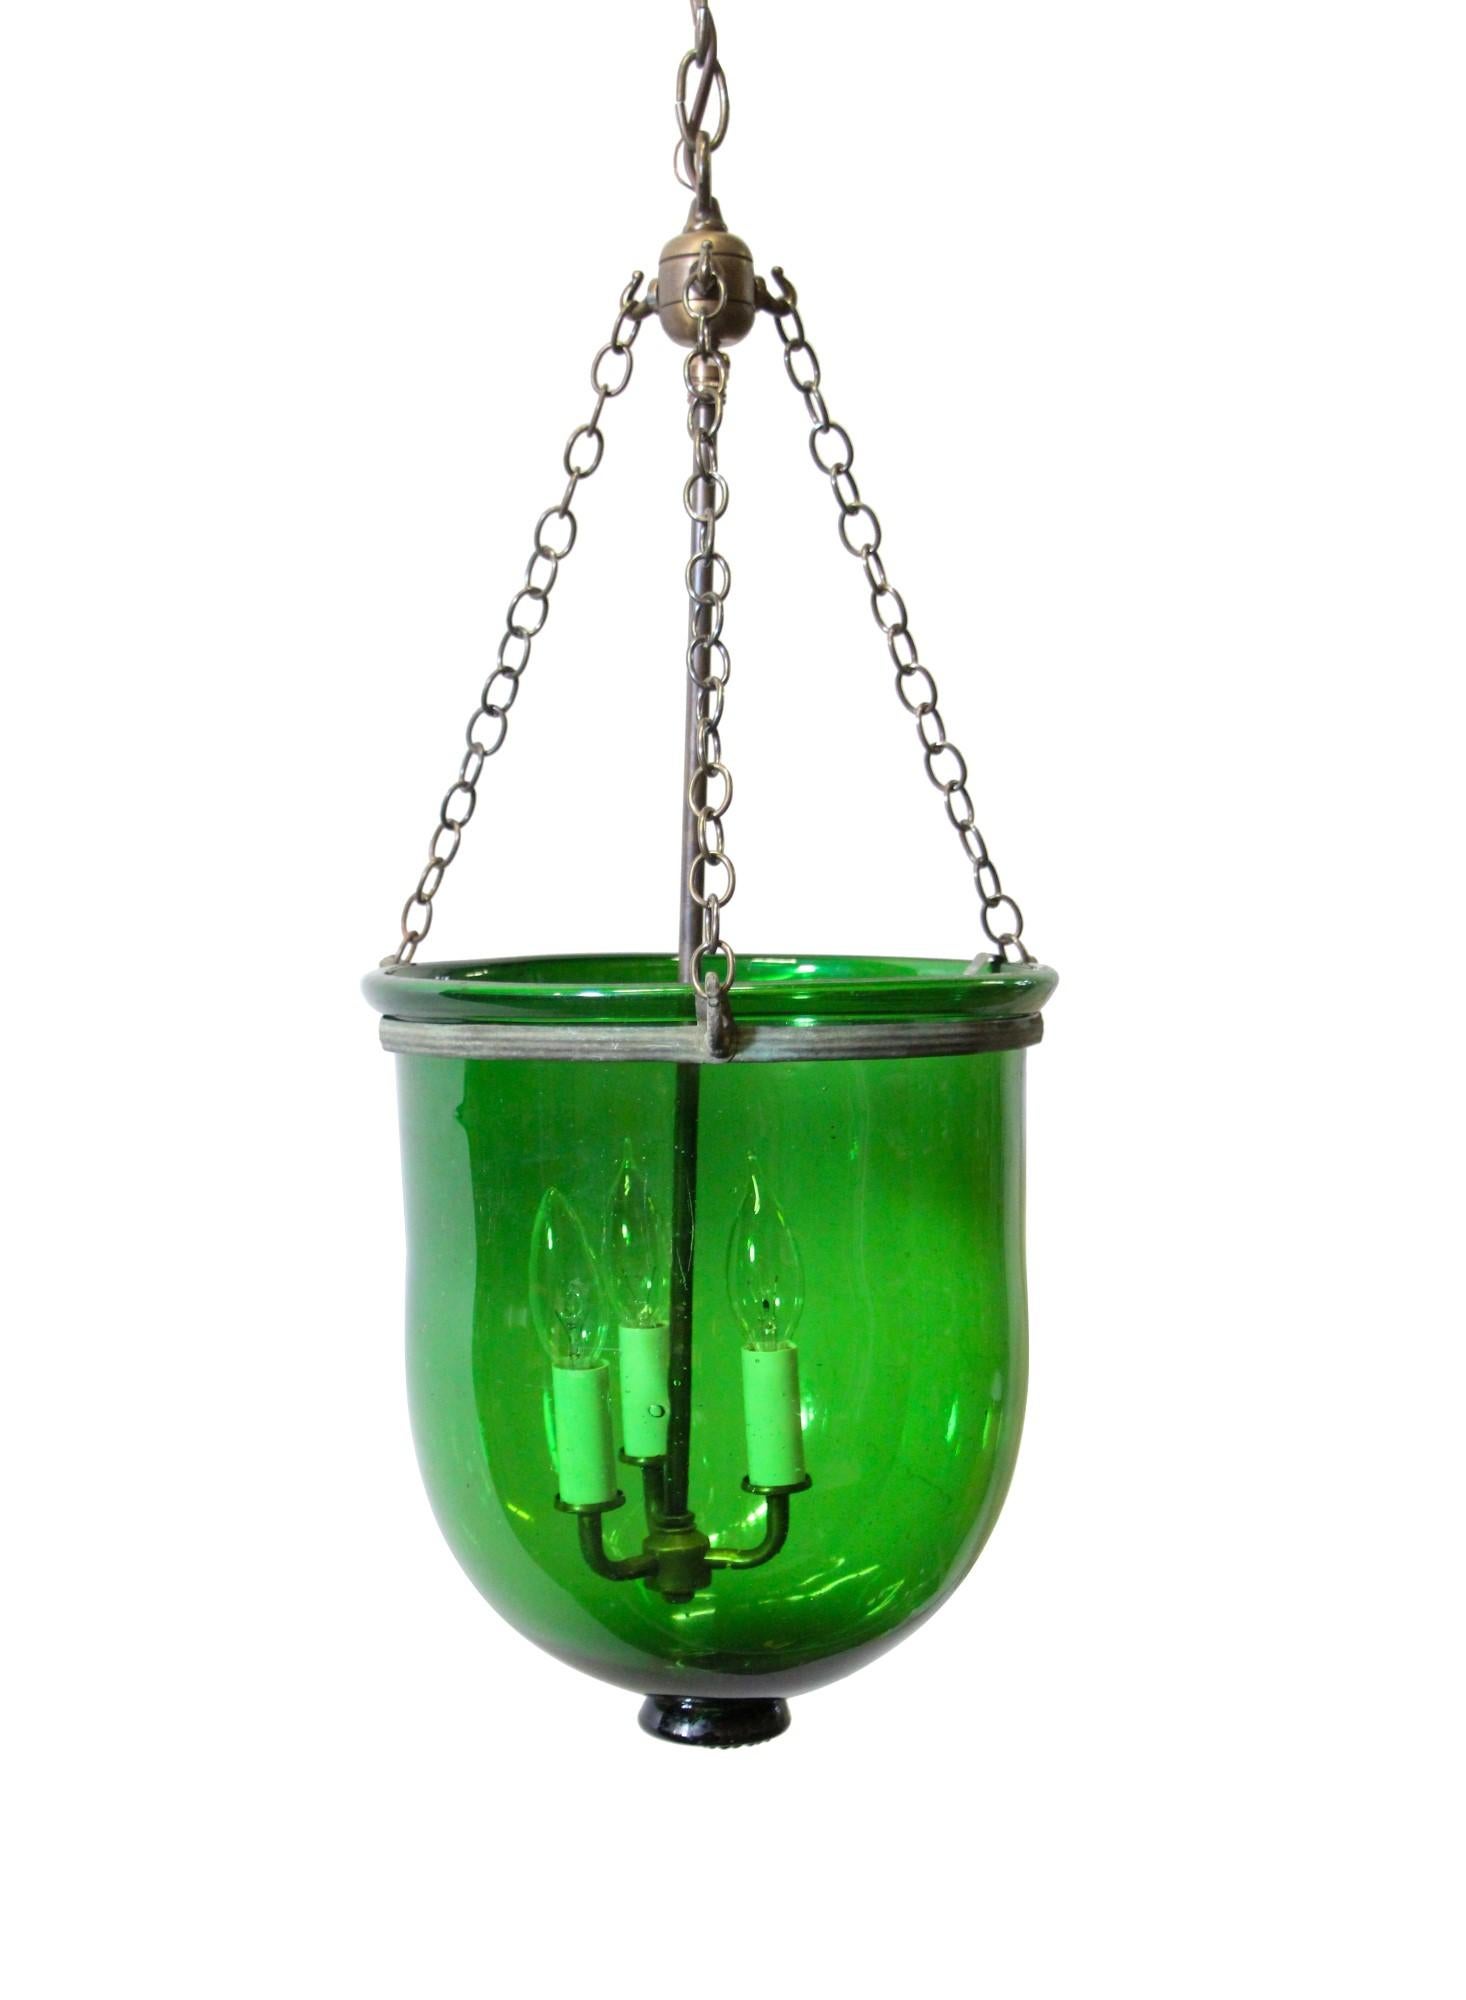 European Green Glass Bell Jar Pendant Light w/ Brass Hardware 3 Lights